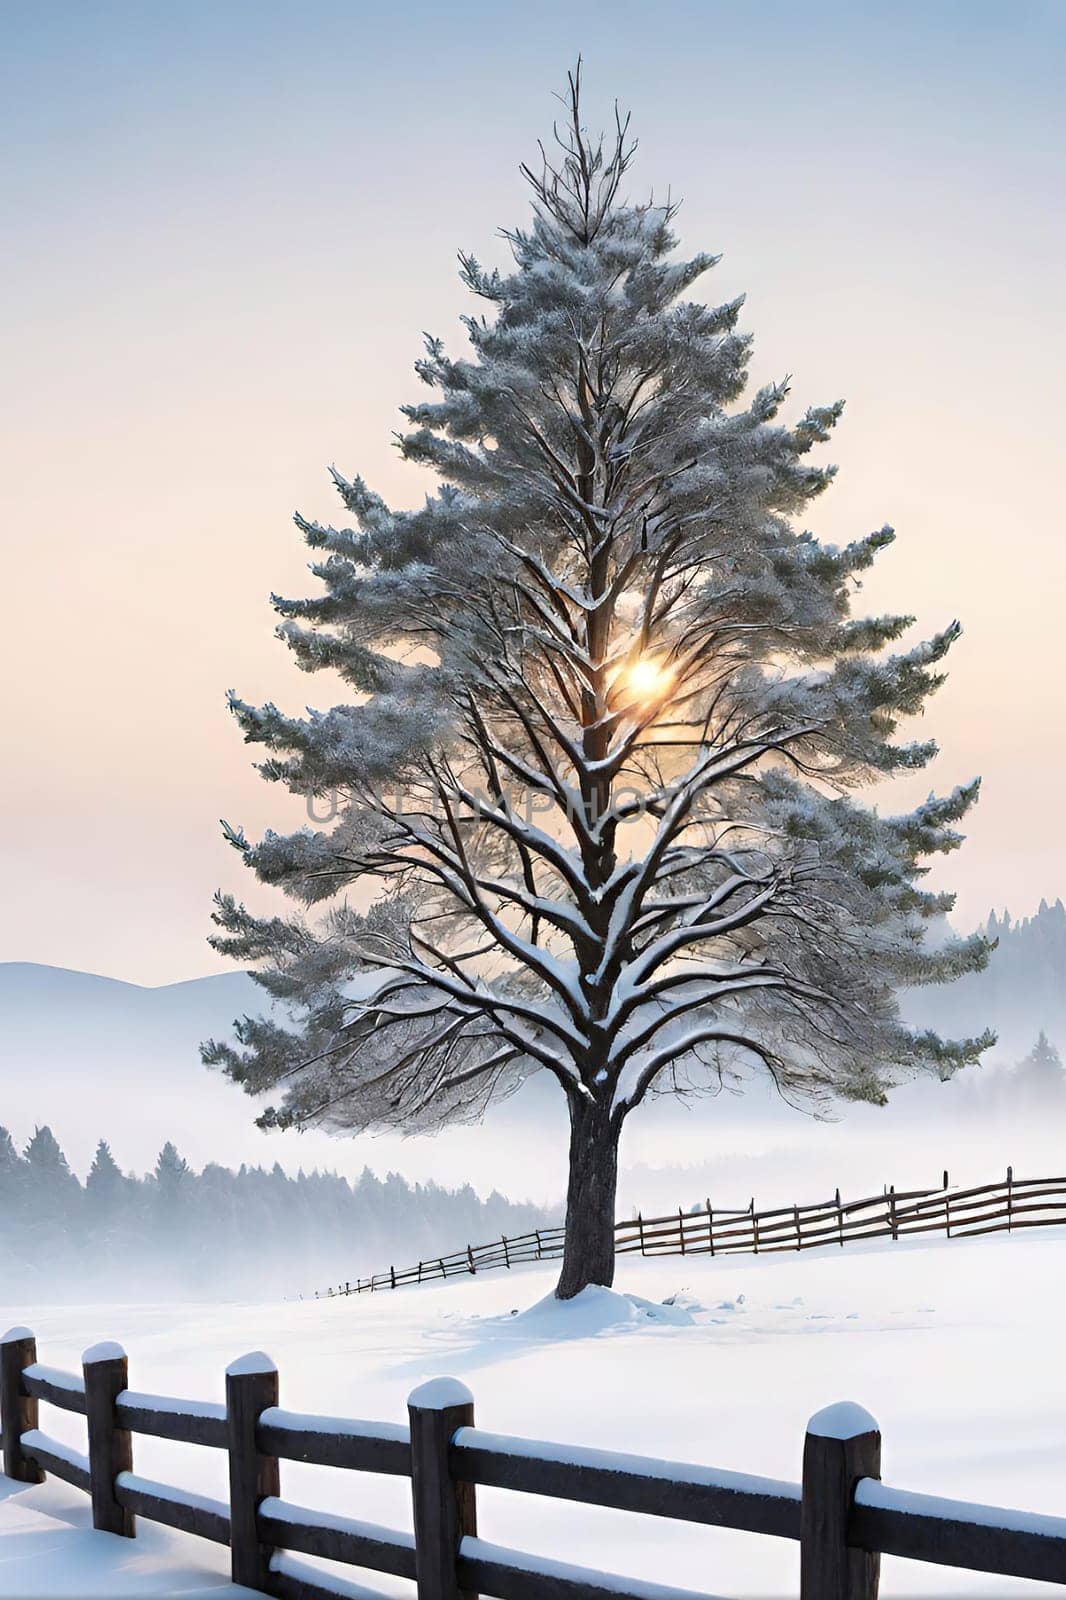 Beautiful winter landscape with frozen tree.Beautiful winter landscape with snow covered tree.Winter landscape with lonely tree.Frosted tree on a hillside in the winter season.